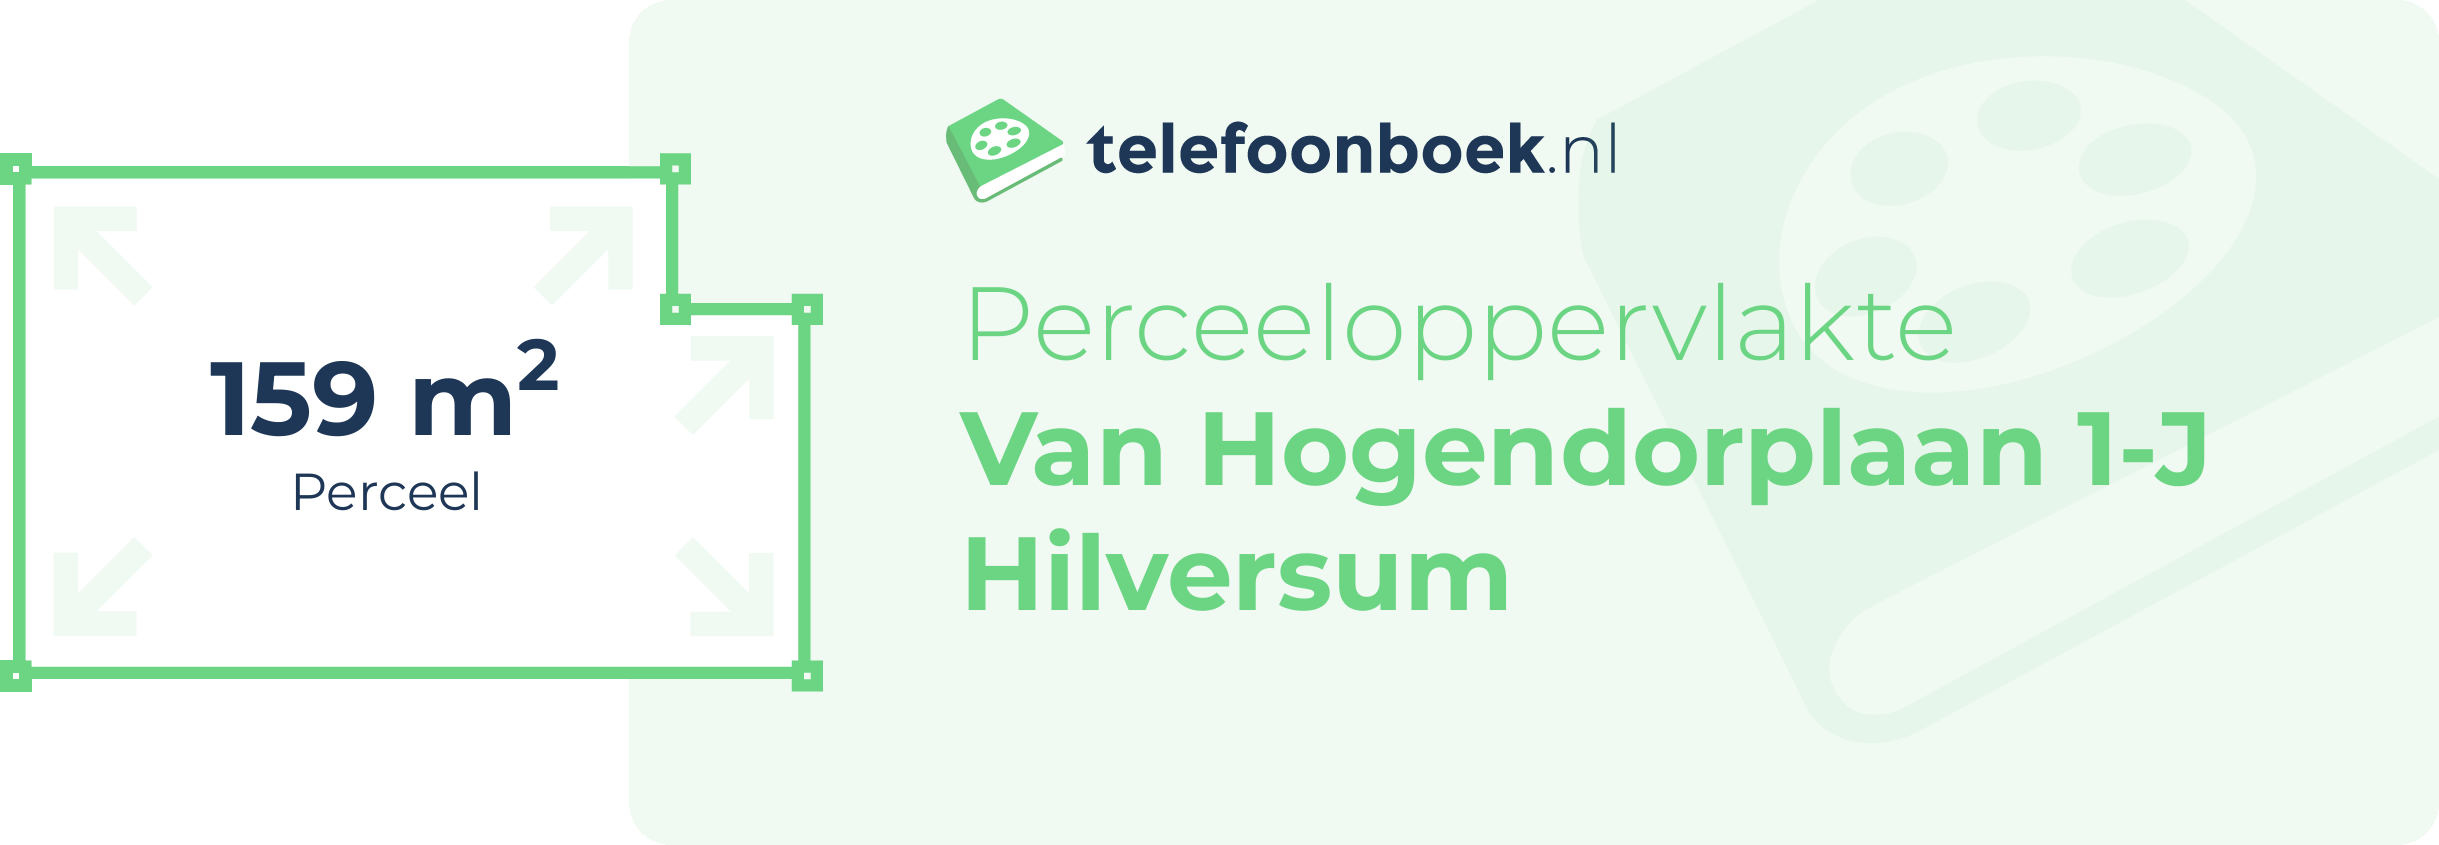 Perceeloppervlakte Van Hogendorplaan 1-J Hilversum